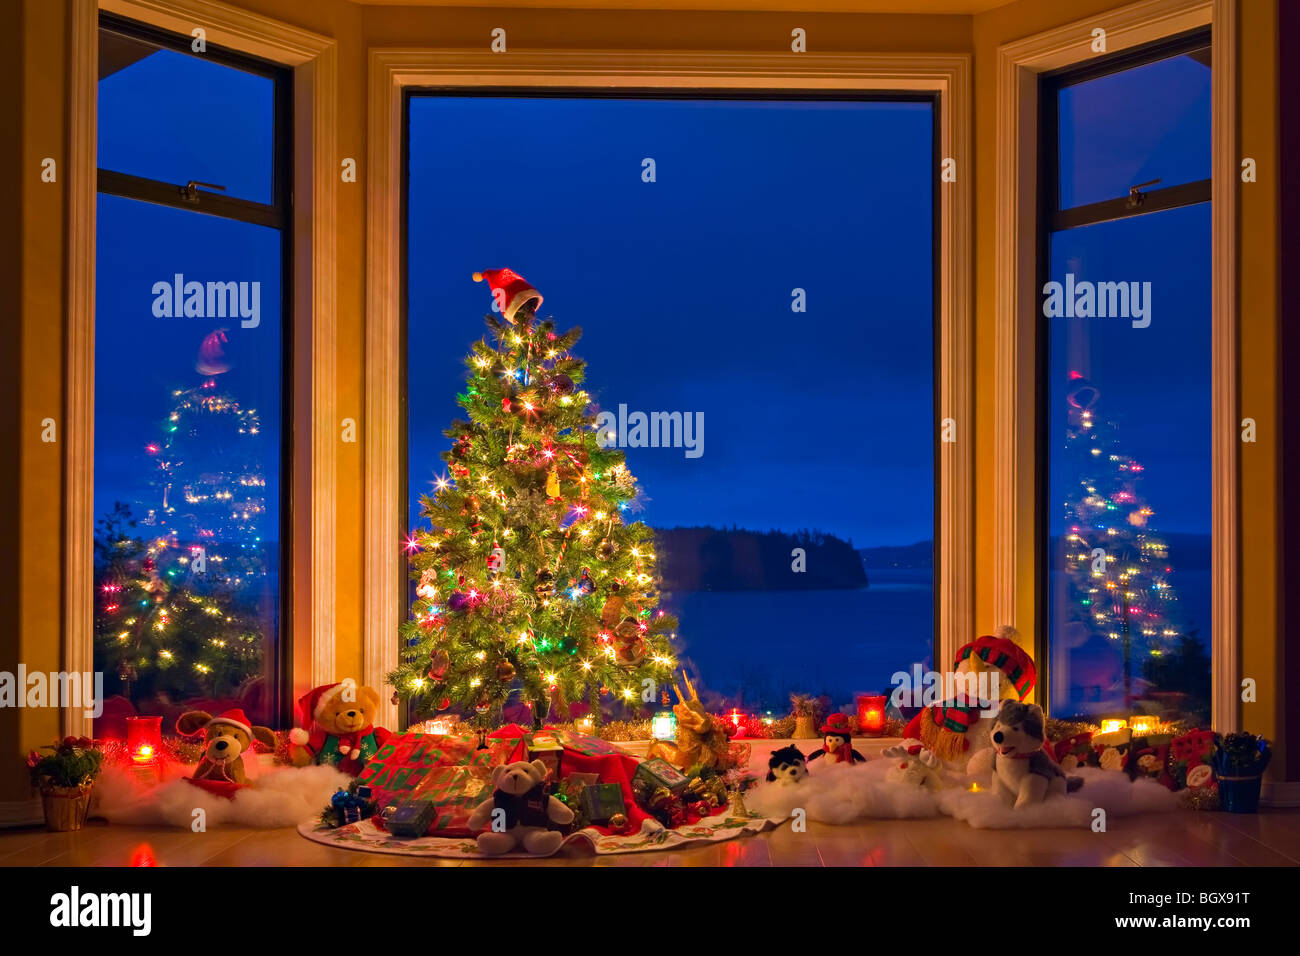 Arbre de Noël avec des lumières, décorations et cadeaux dans une fenêtre au crépuscule, les artistes Point, Hyde Creek, Port McNeill, le nord de l'Av Banque D'Images